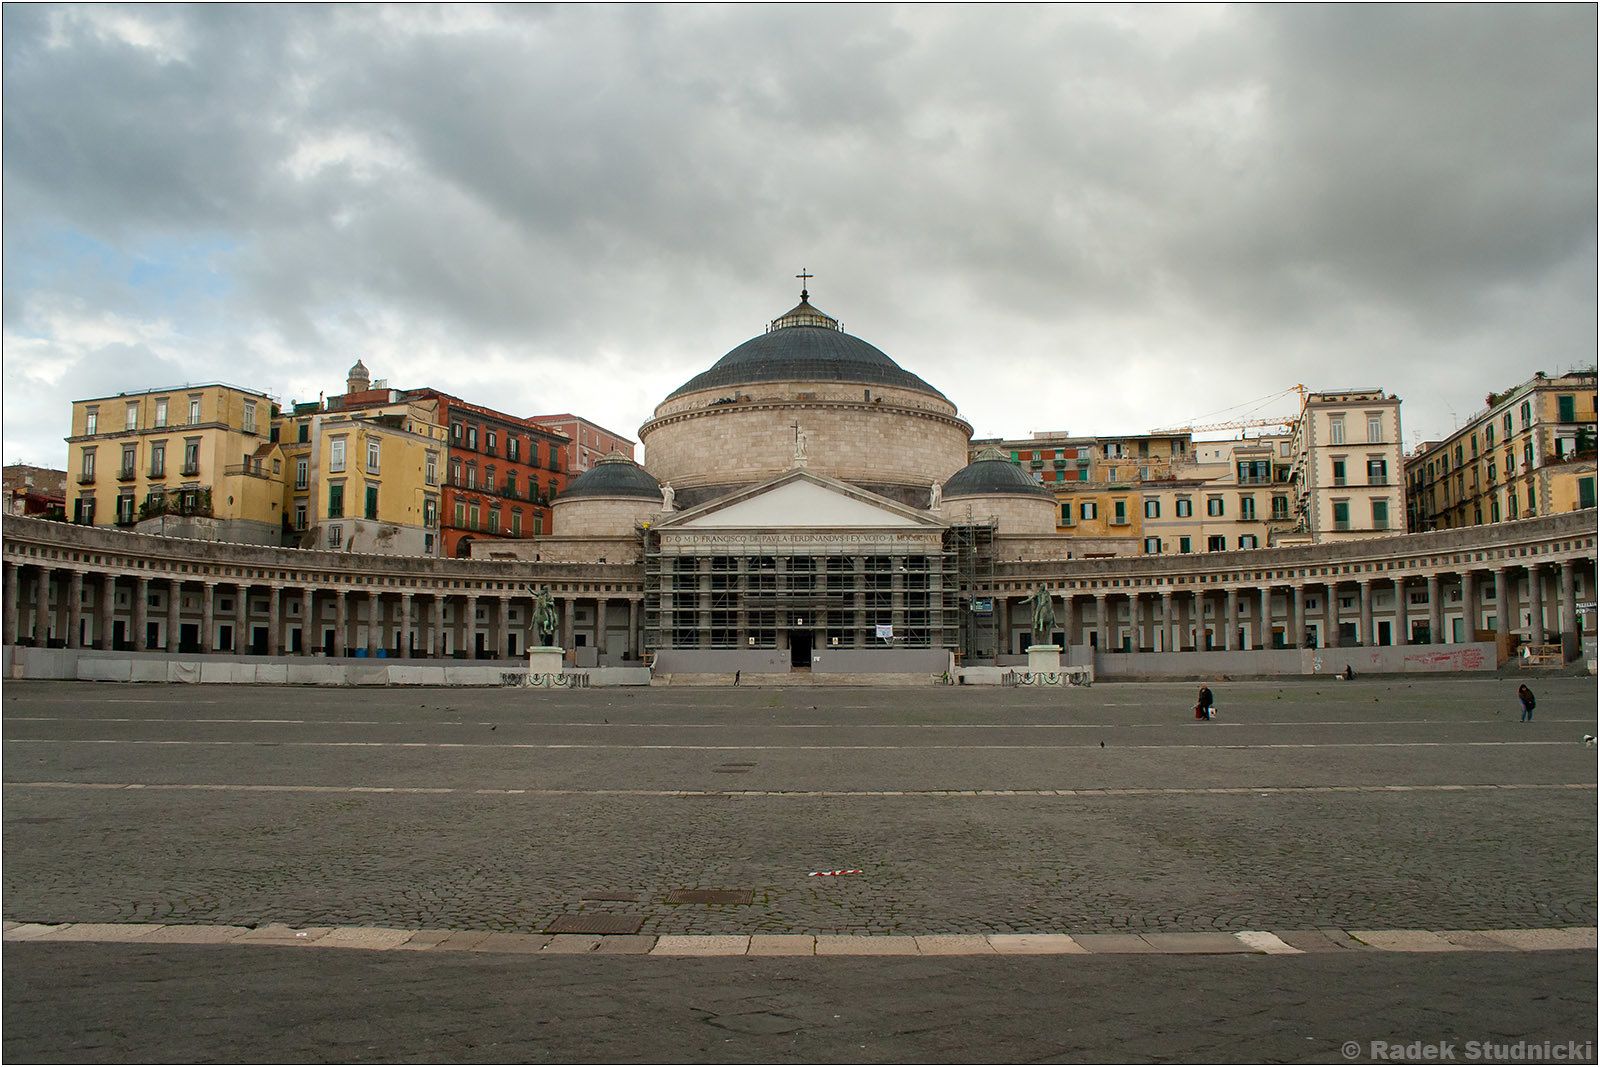 Piazza del Plebiscito w Neapolu